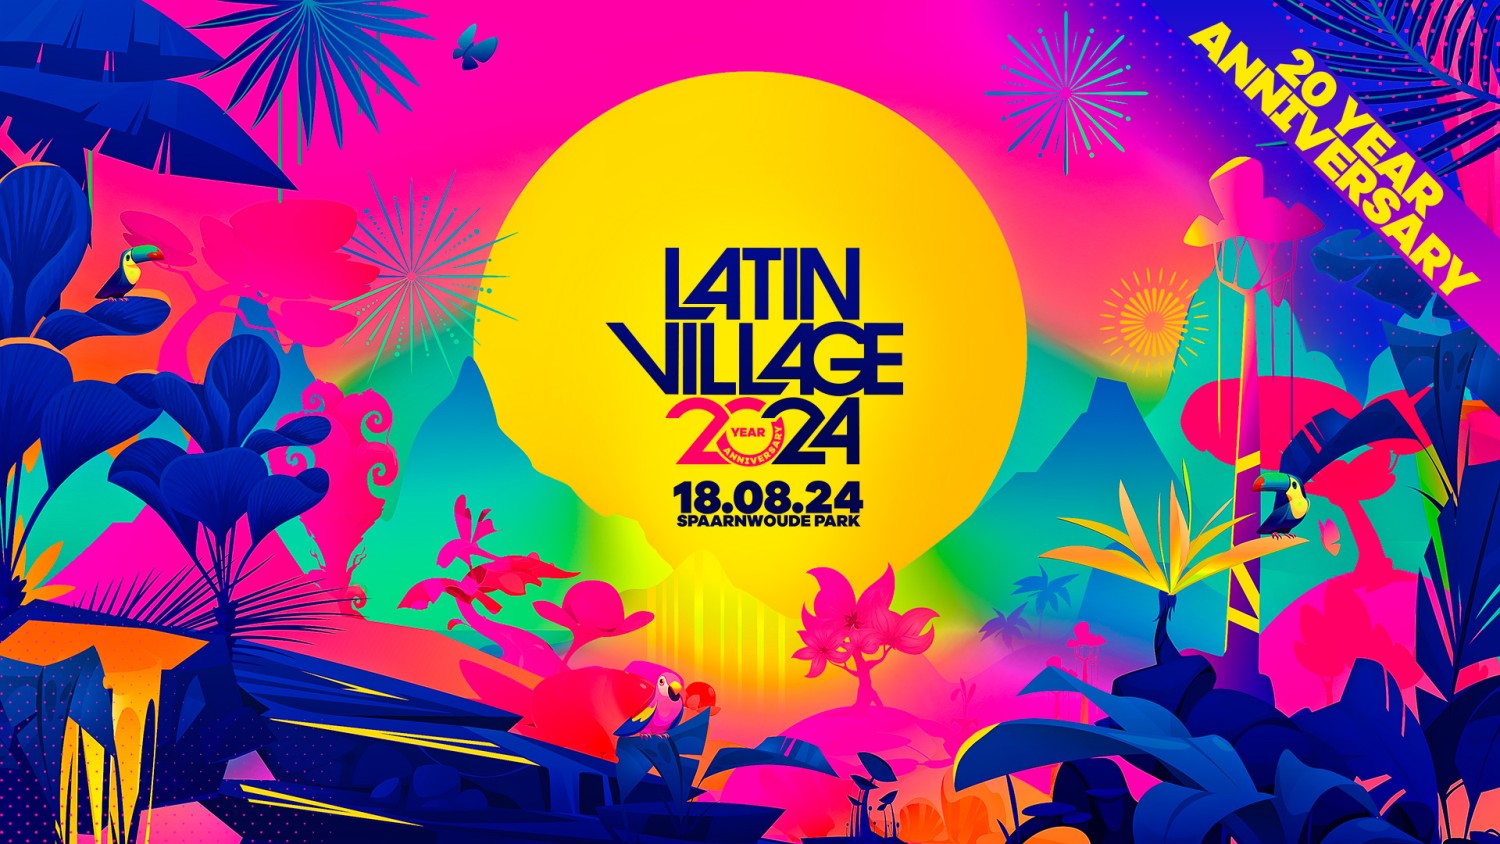 LatinVillage Festival 2024